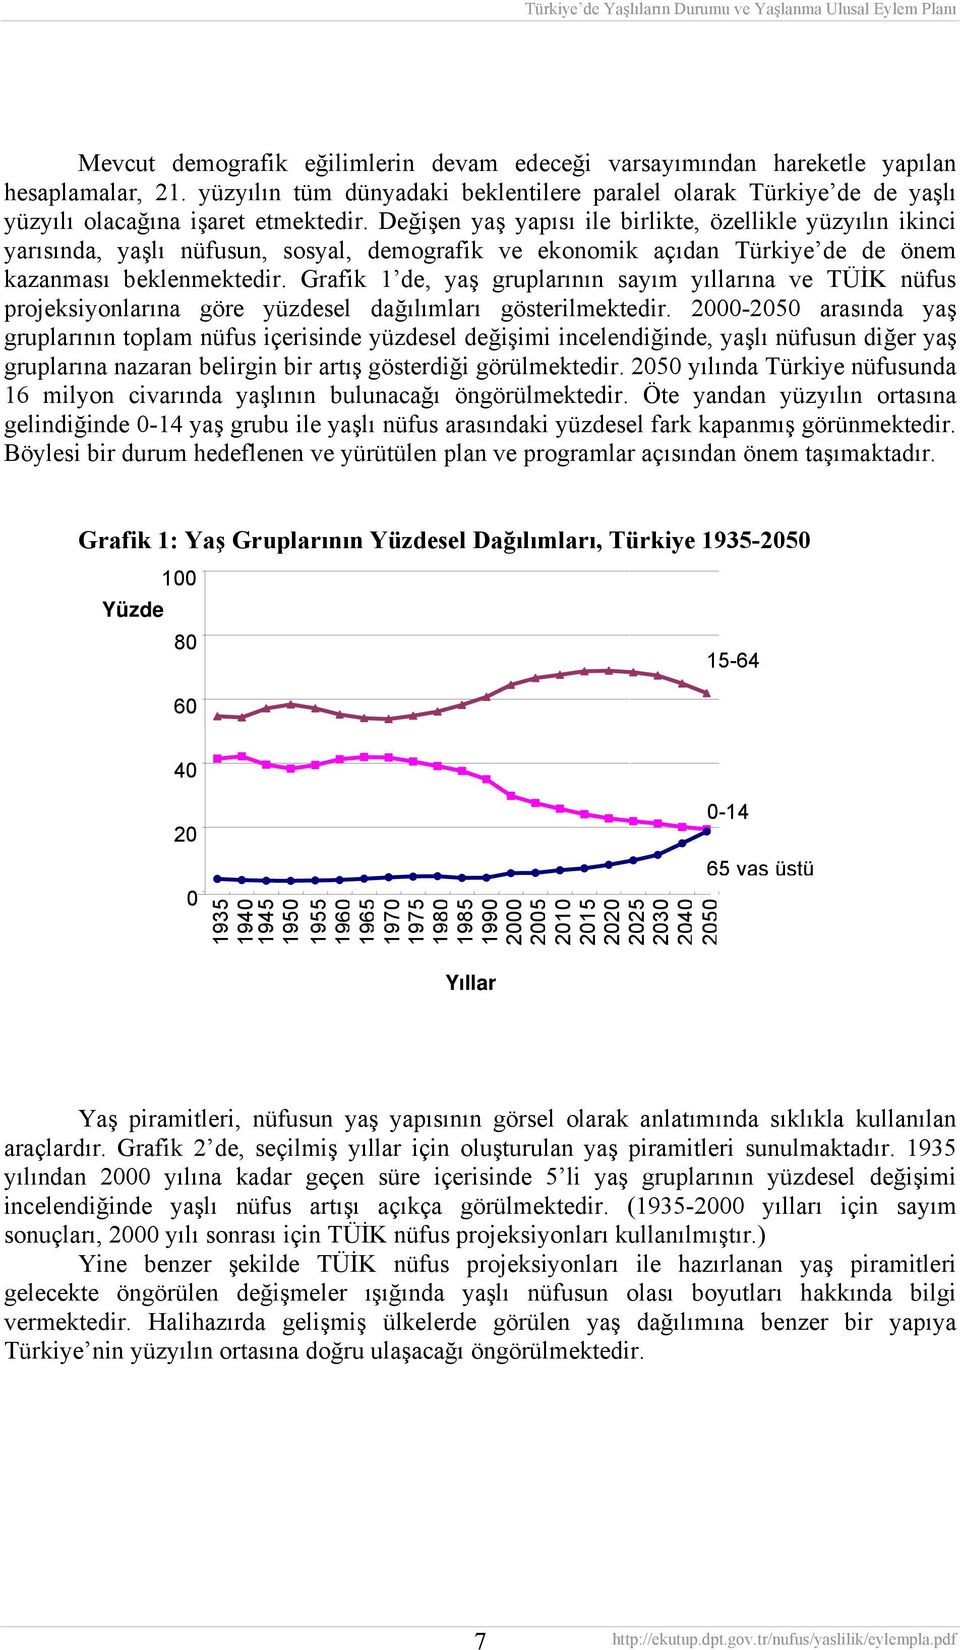 Değişen yaş yapısı ile birlikte, özellikle yüzyılın ikinci yarısında, yaşlı nüfusun, sosyal, demografik ve ekonomik açıdan Türkiye de de önem kazanması beklenmektedir.